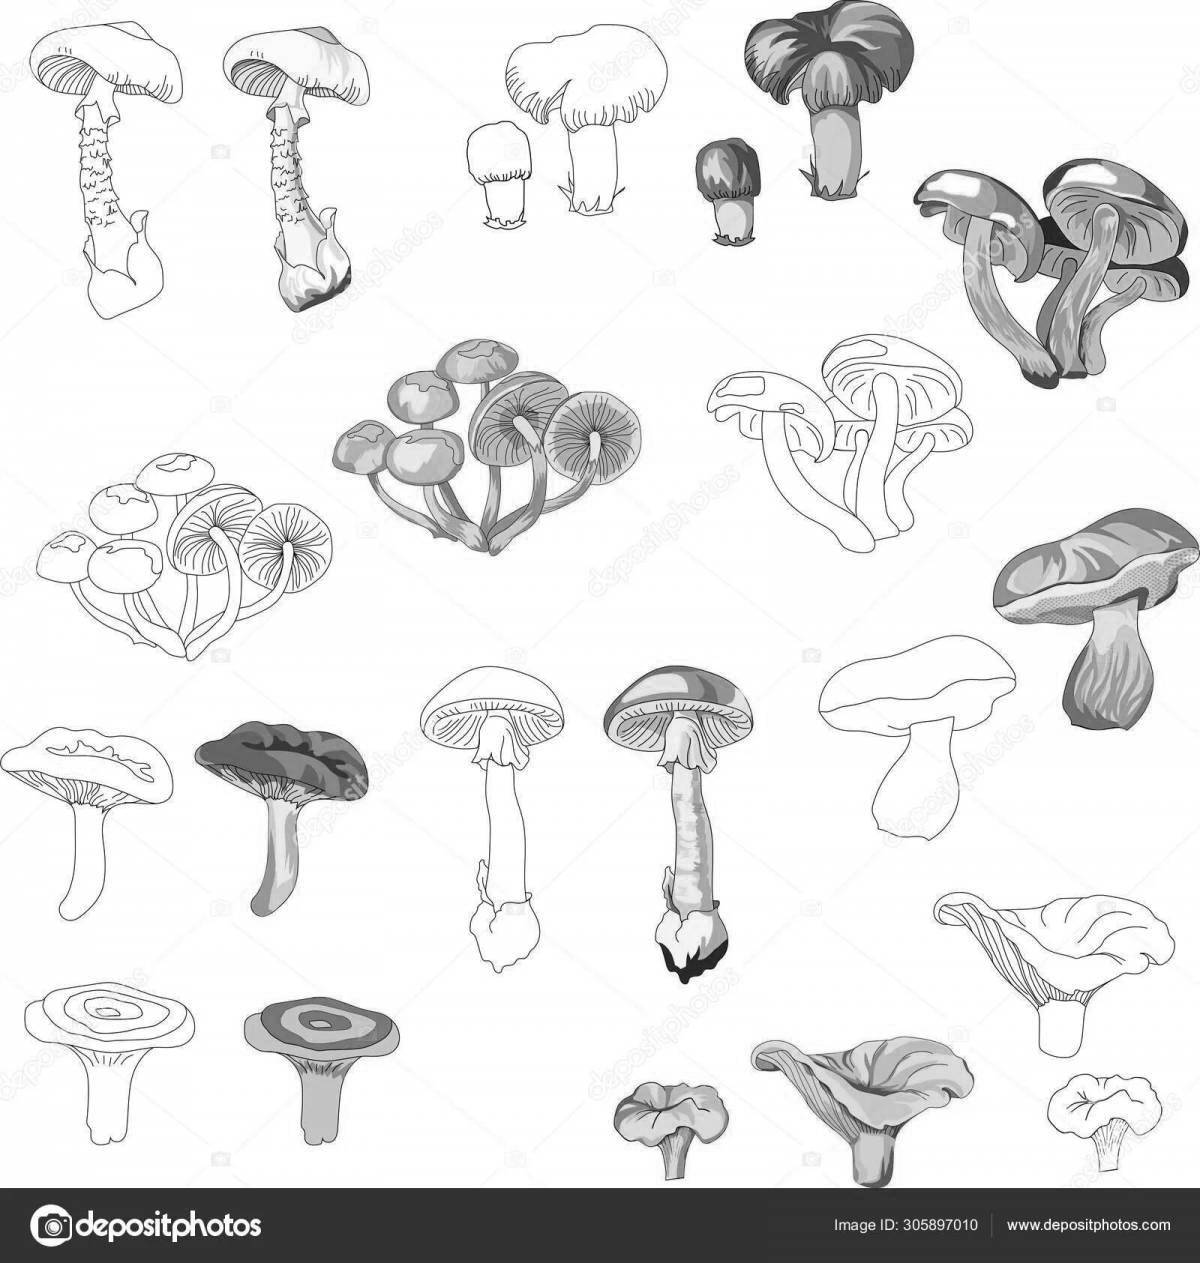 Terrific inedible mushrooms